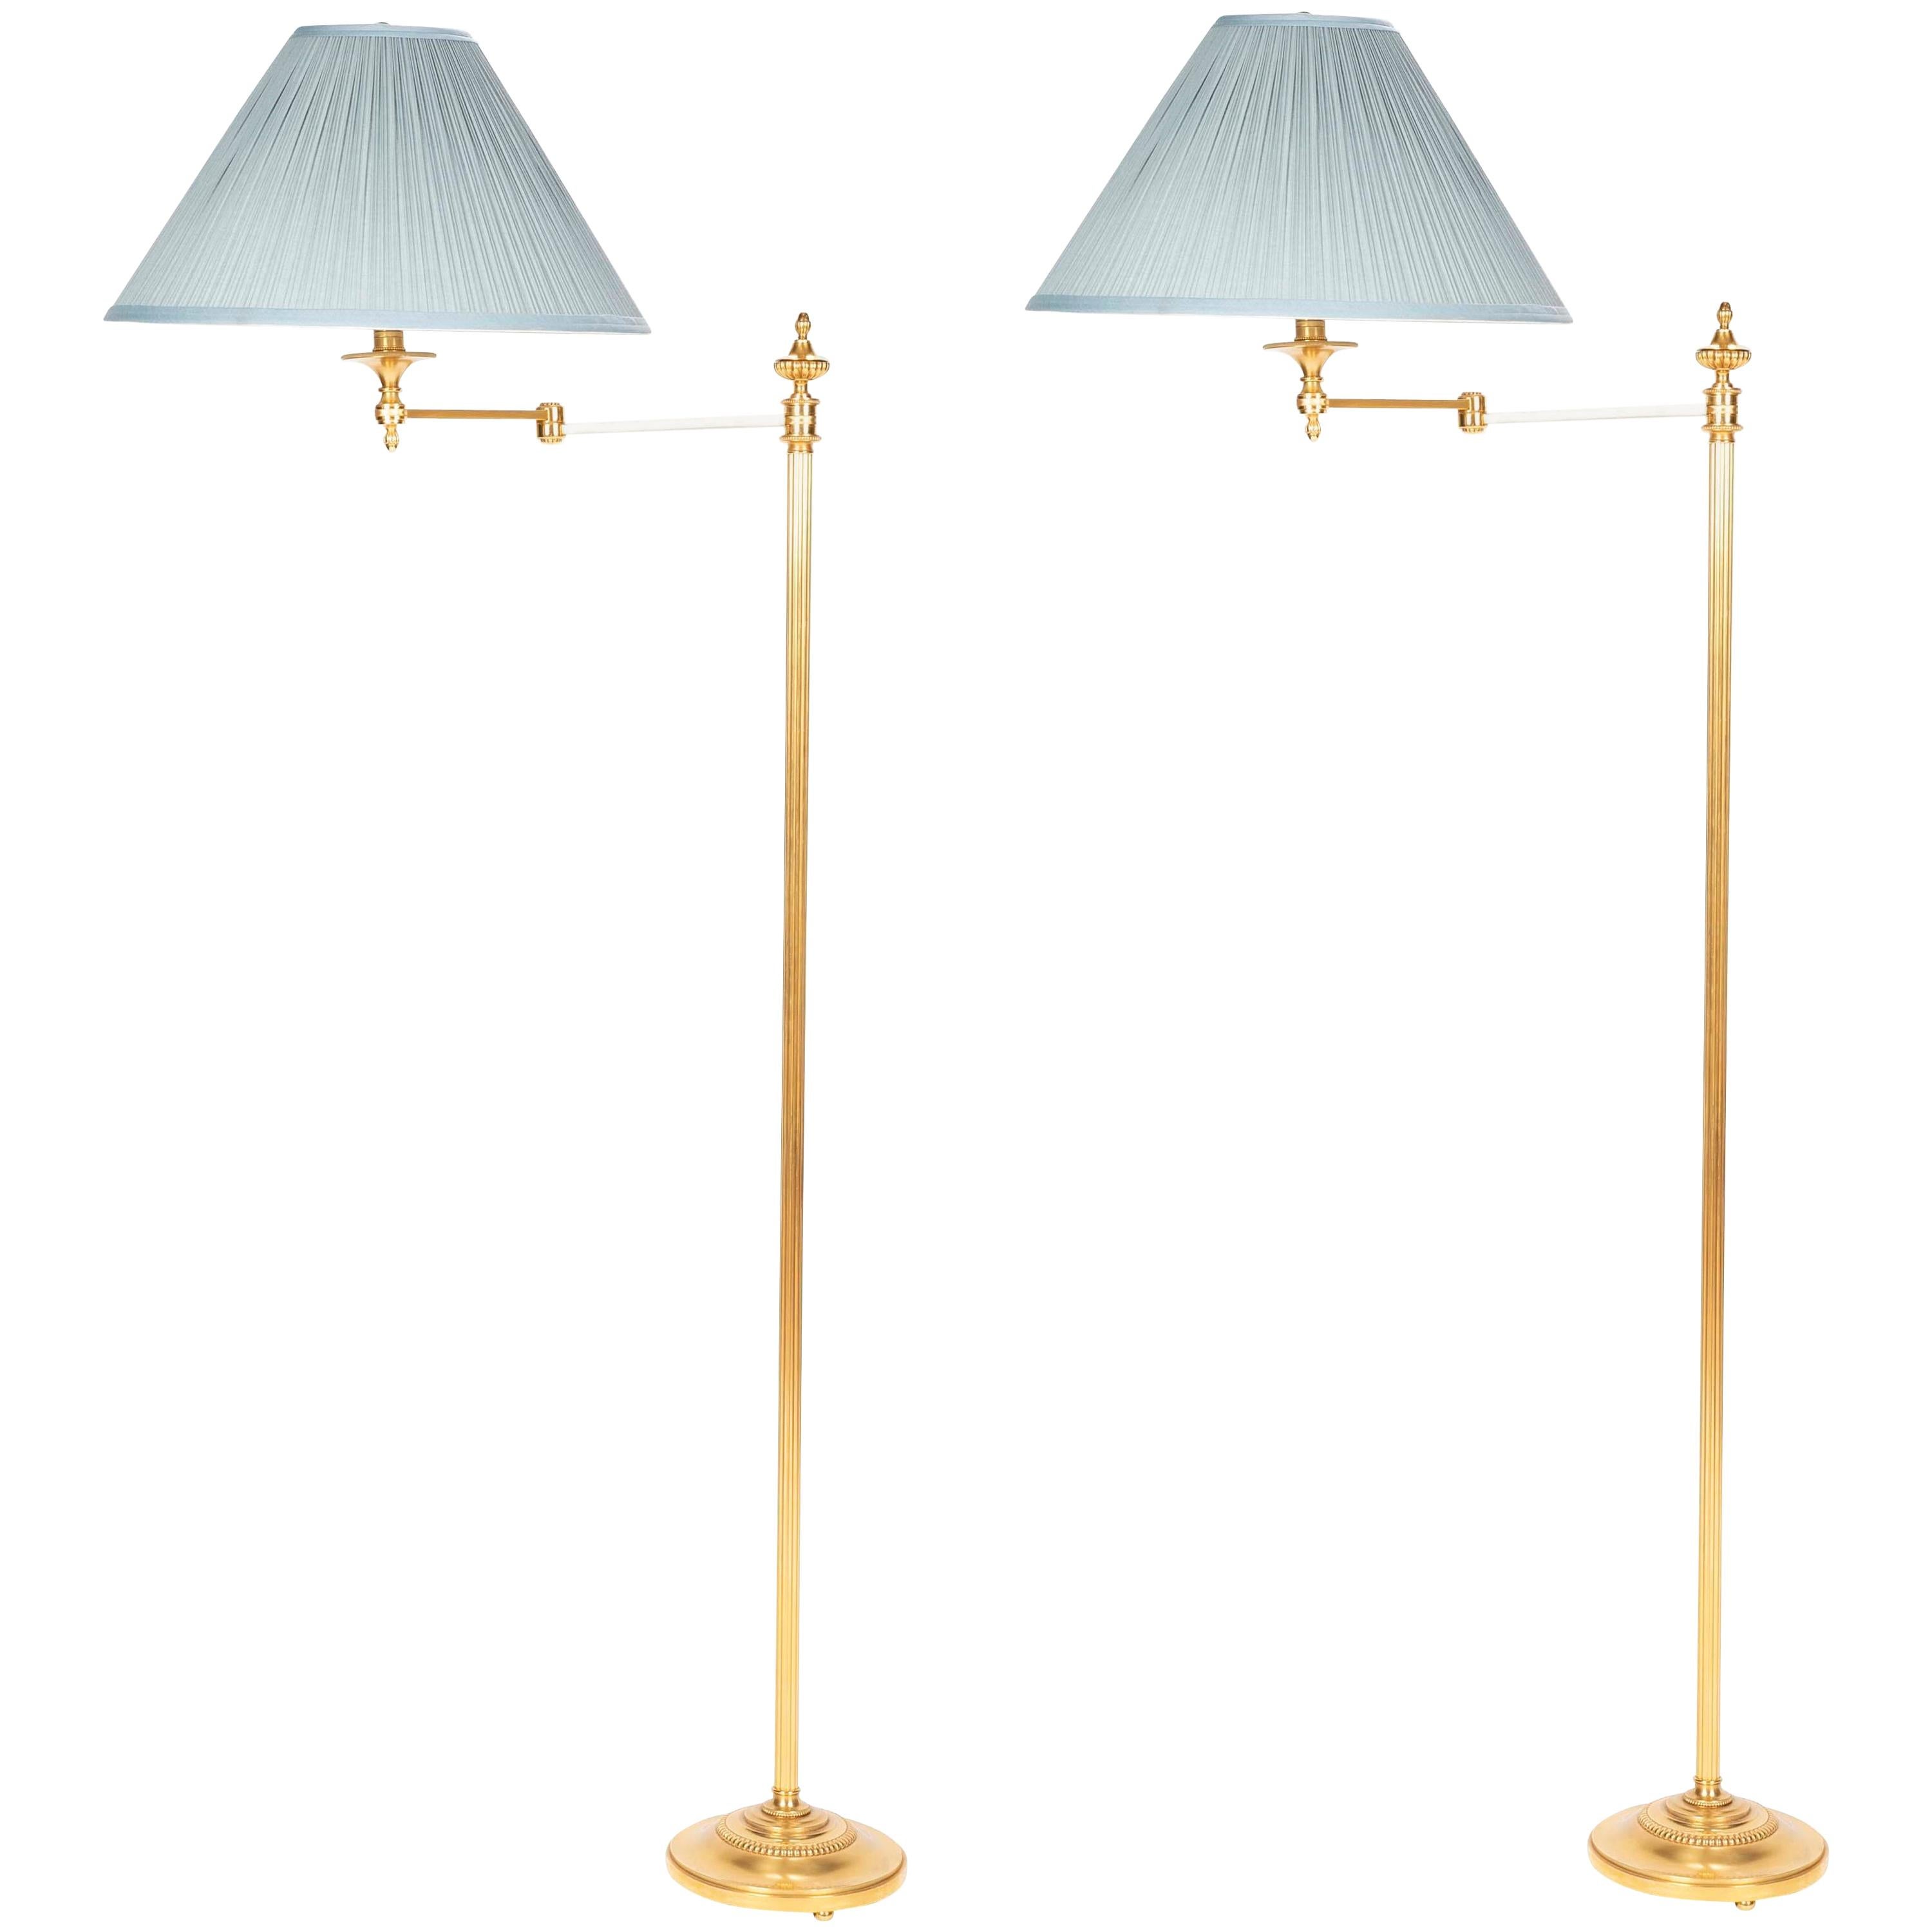 A Maison Meilleur Gilded Bronze Swing-Arm Lamps